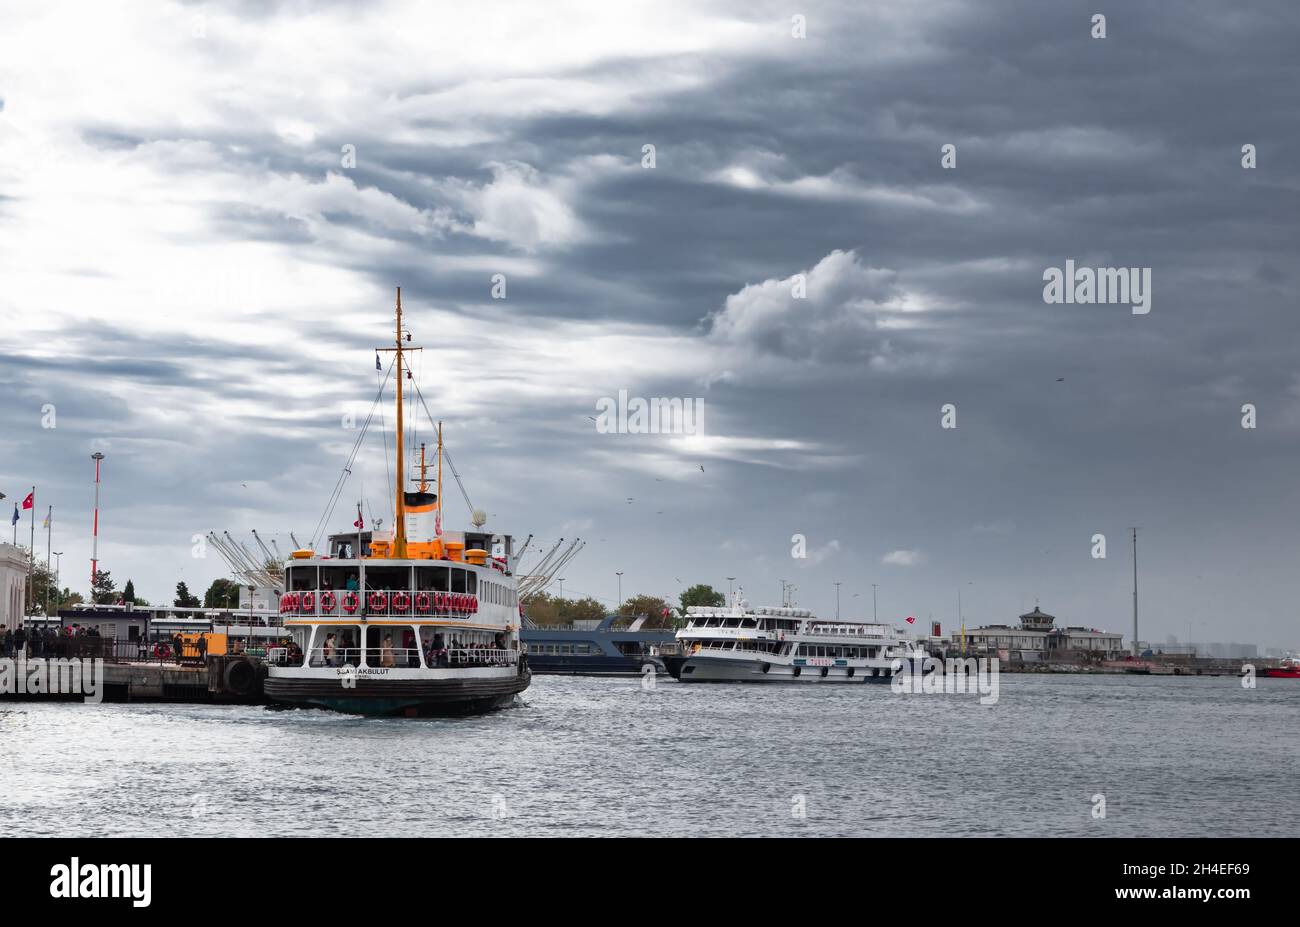 Passagierfähre auf See mit bewölktem Himmel Stockfoto